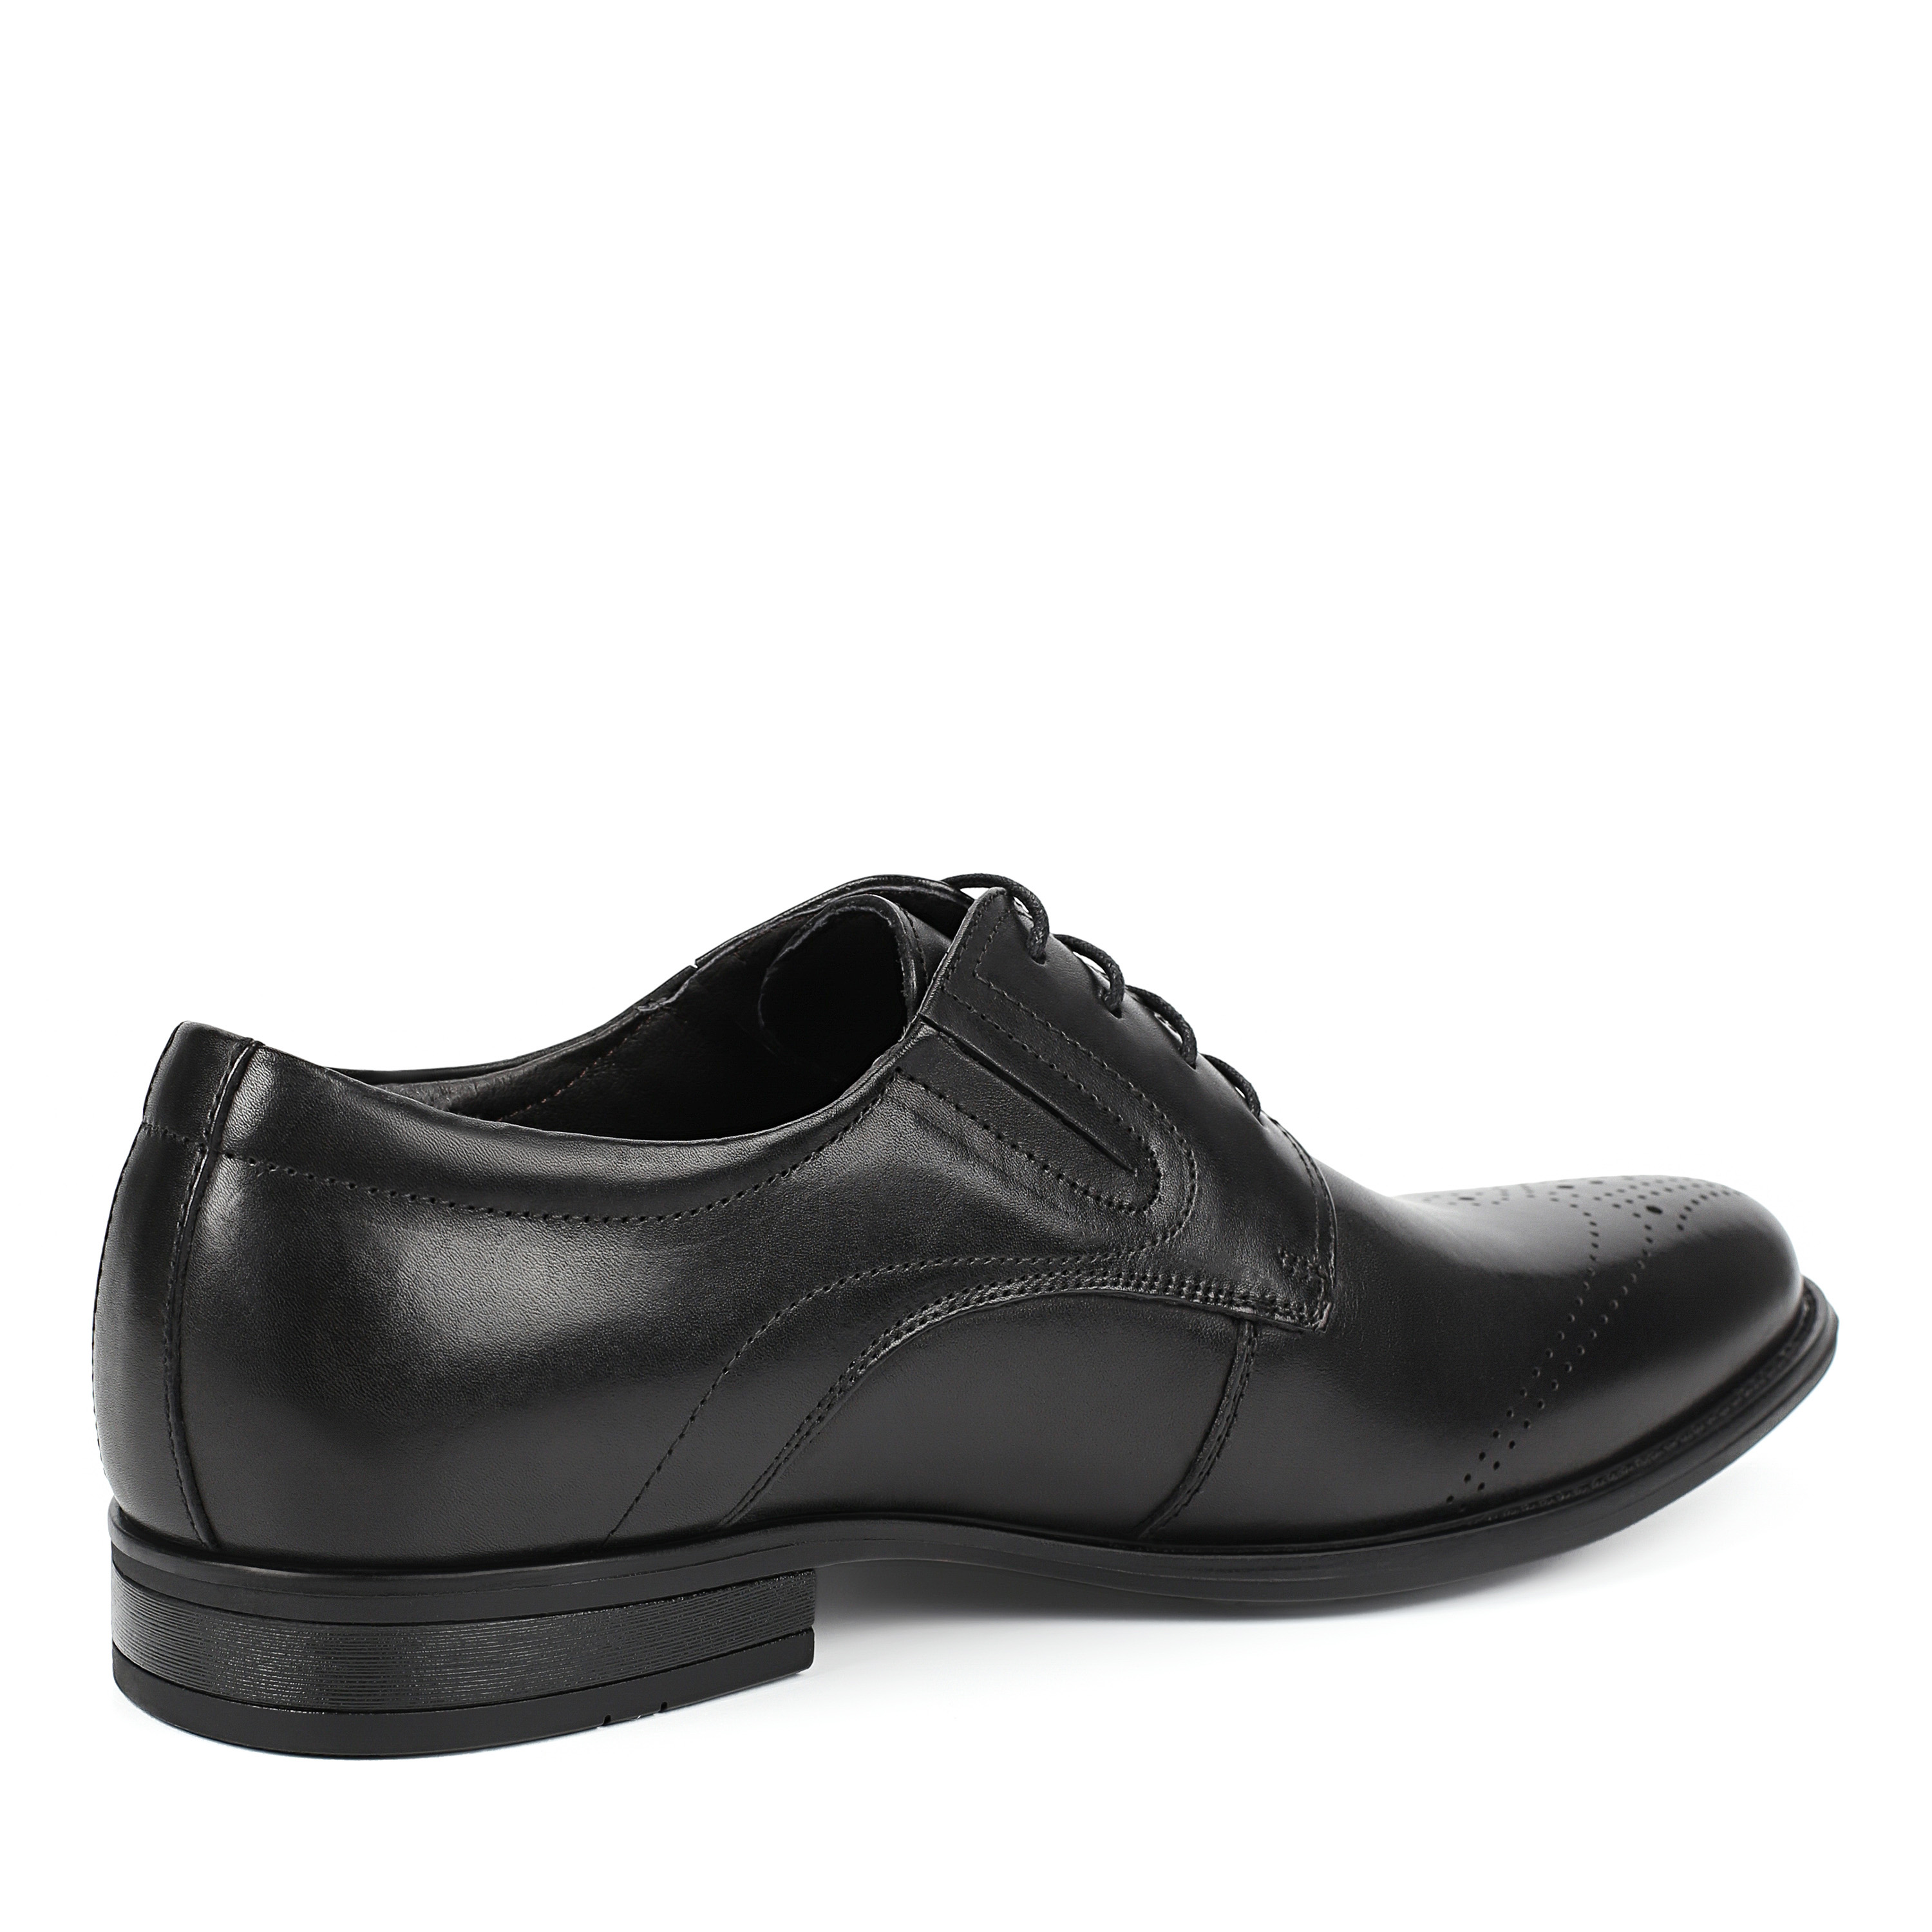 Туфли Thomas Munz 58-073A-1101, цвет черный, размер 40 дерби - фото 3